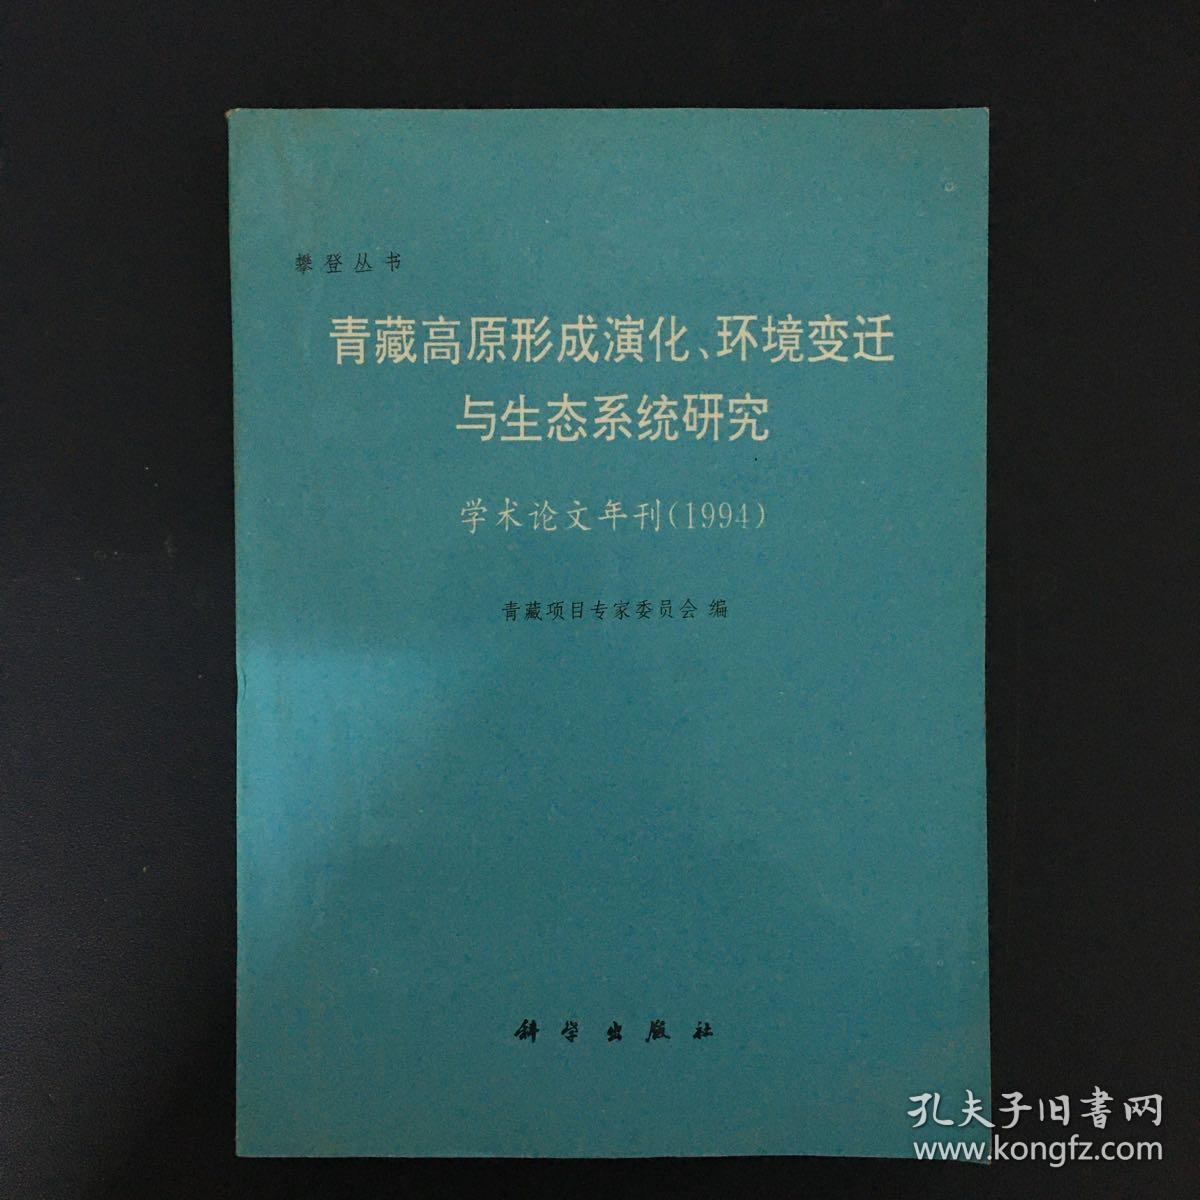 青藏高原形成演化、环境变迁与生态系统研究:学术论文年刊(1994)